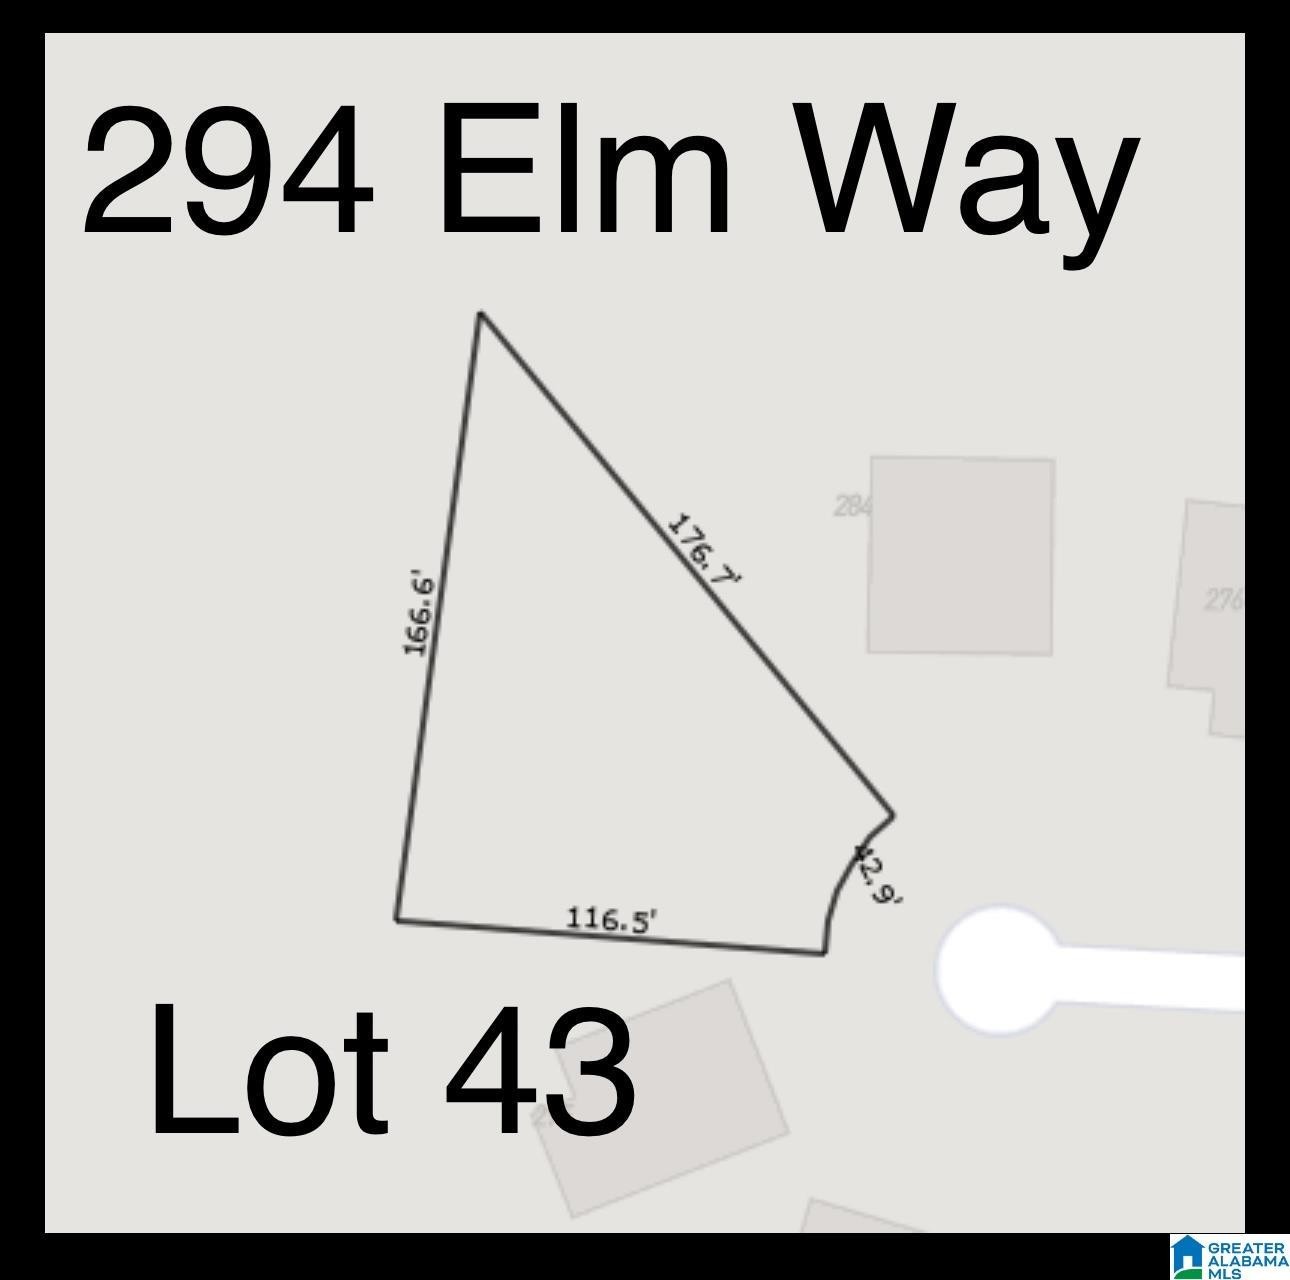 1. 294 Elm Way